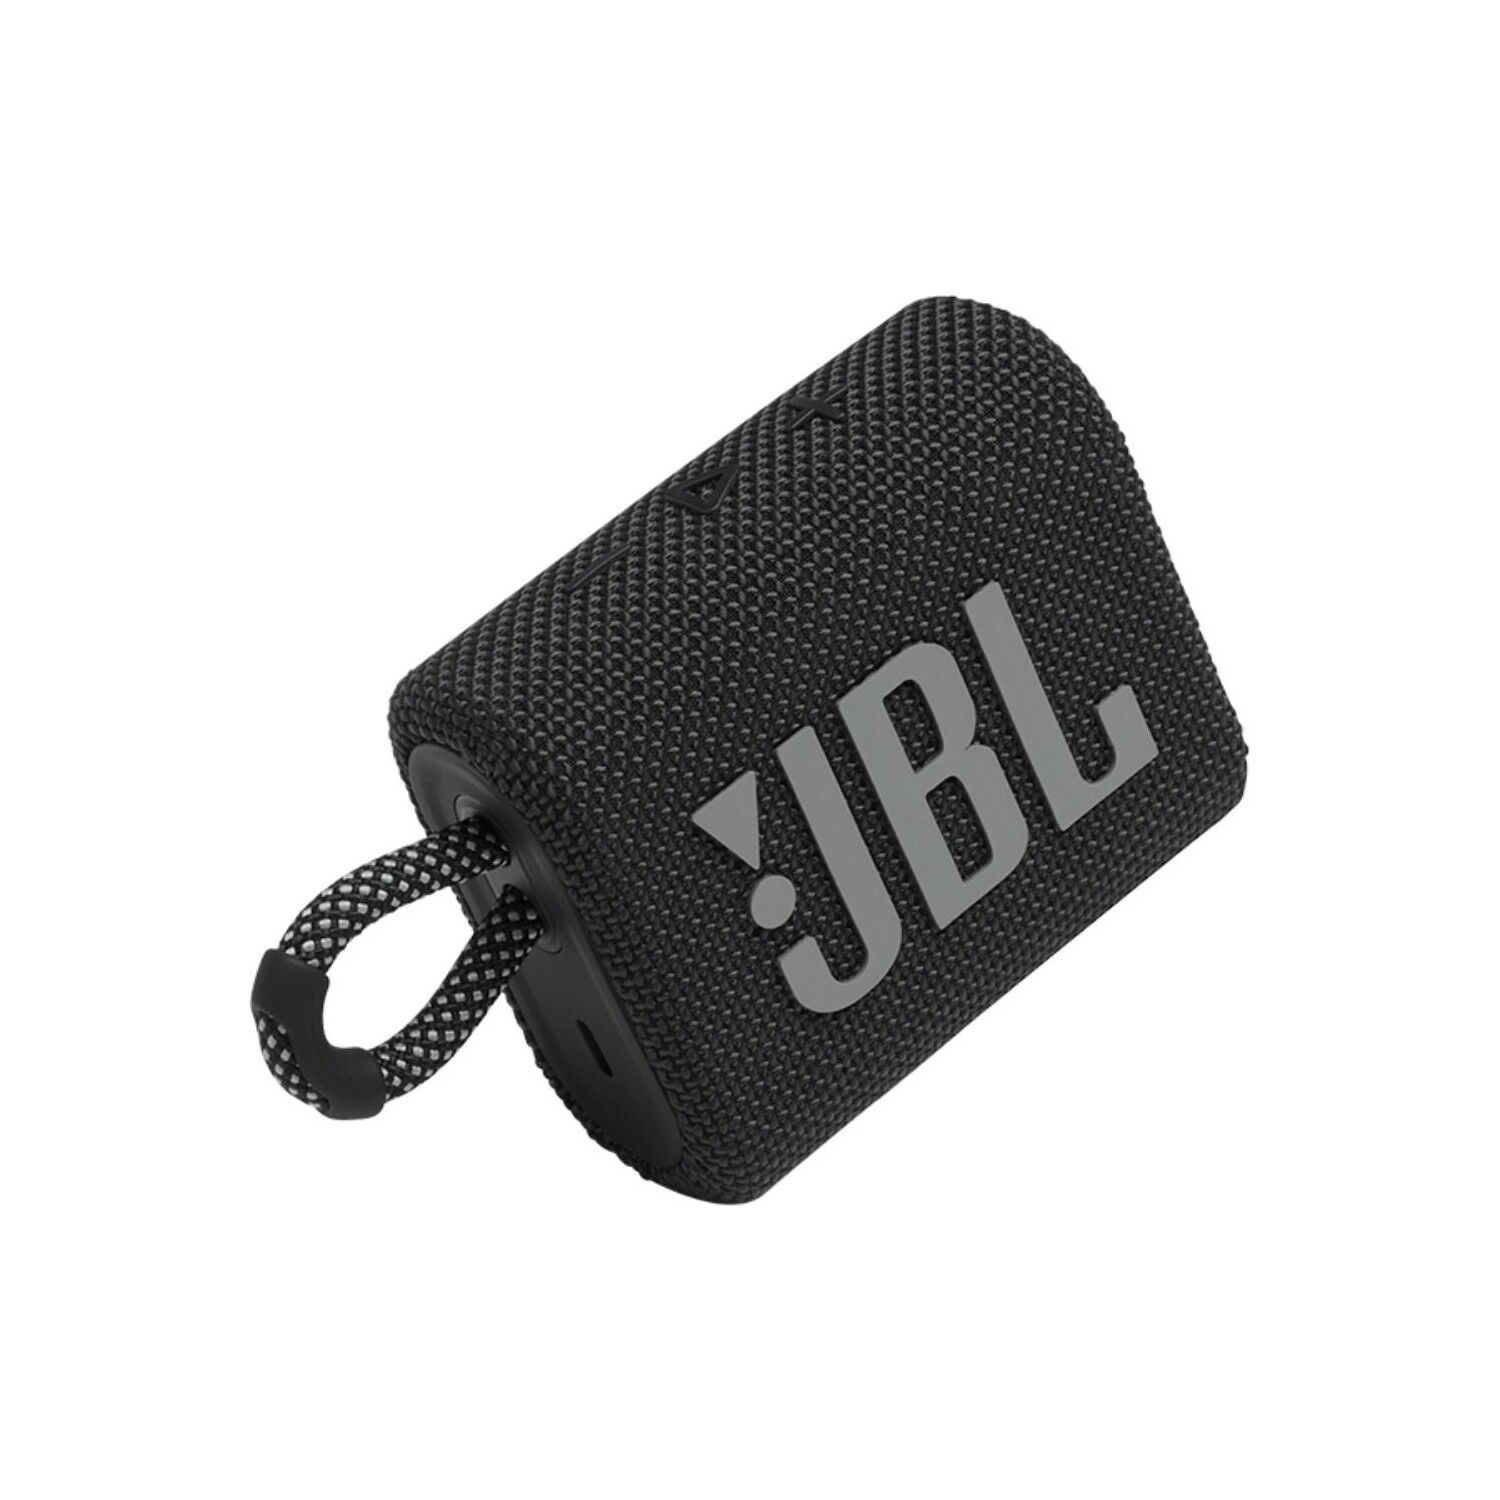 JBL GO 3 Taşınabilir Su Geçirmez Bluetooth Hoparlör /Siyah